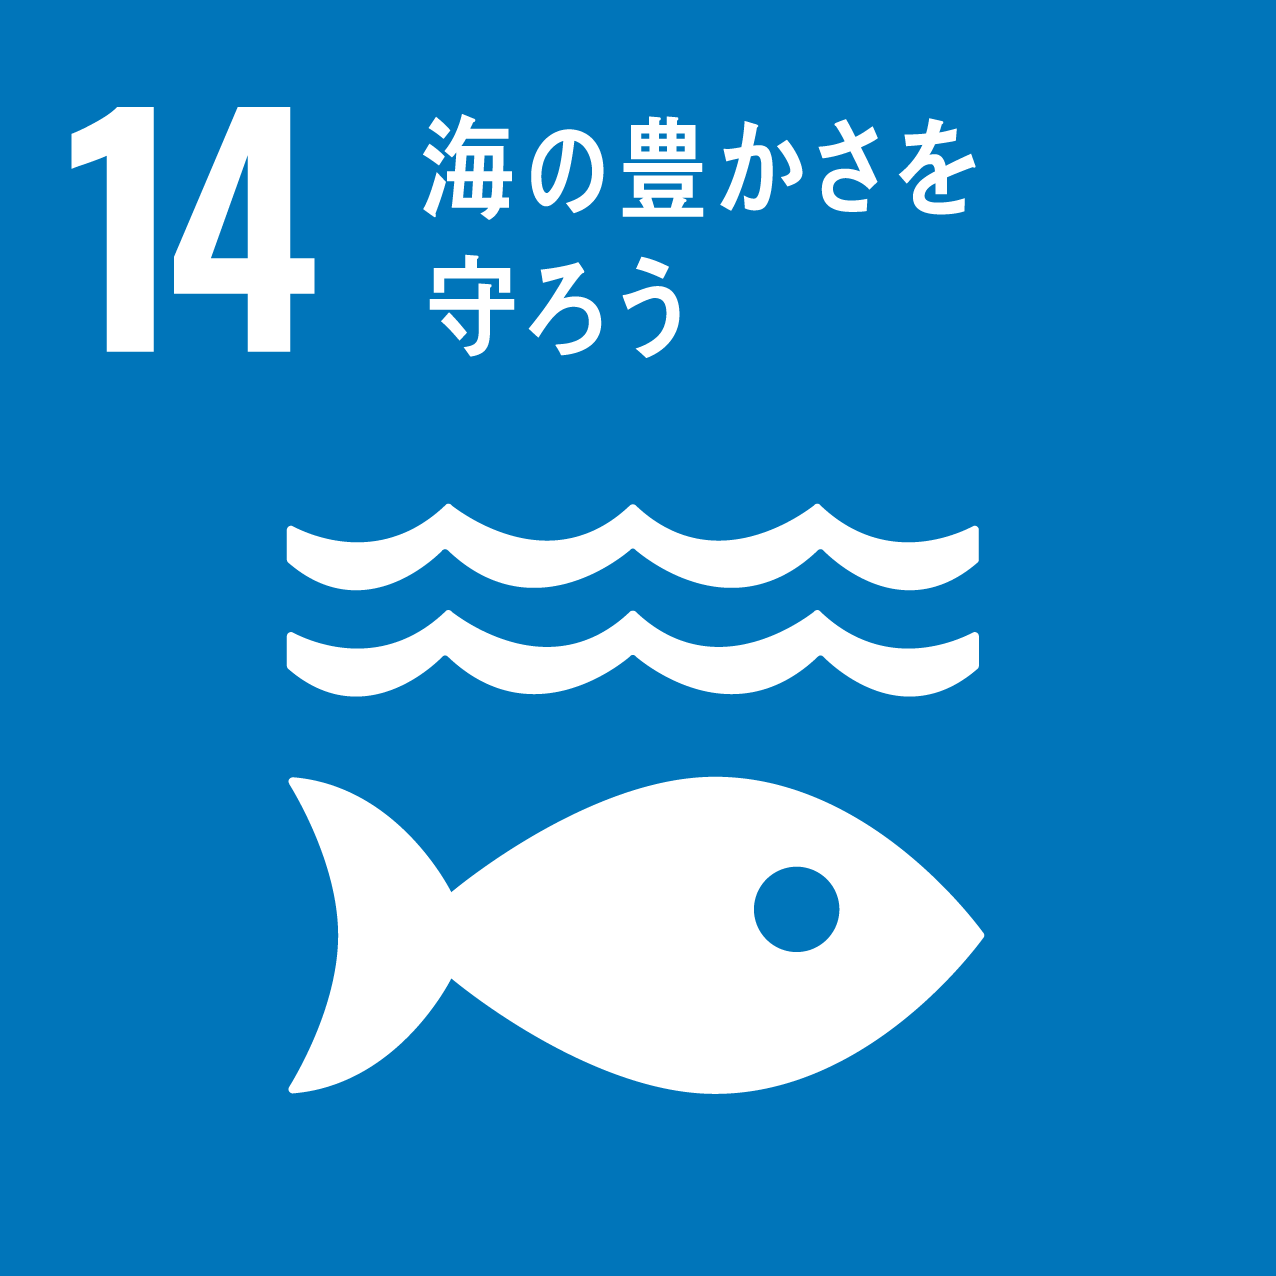 目標14.海の豊かさを守ろう